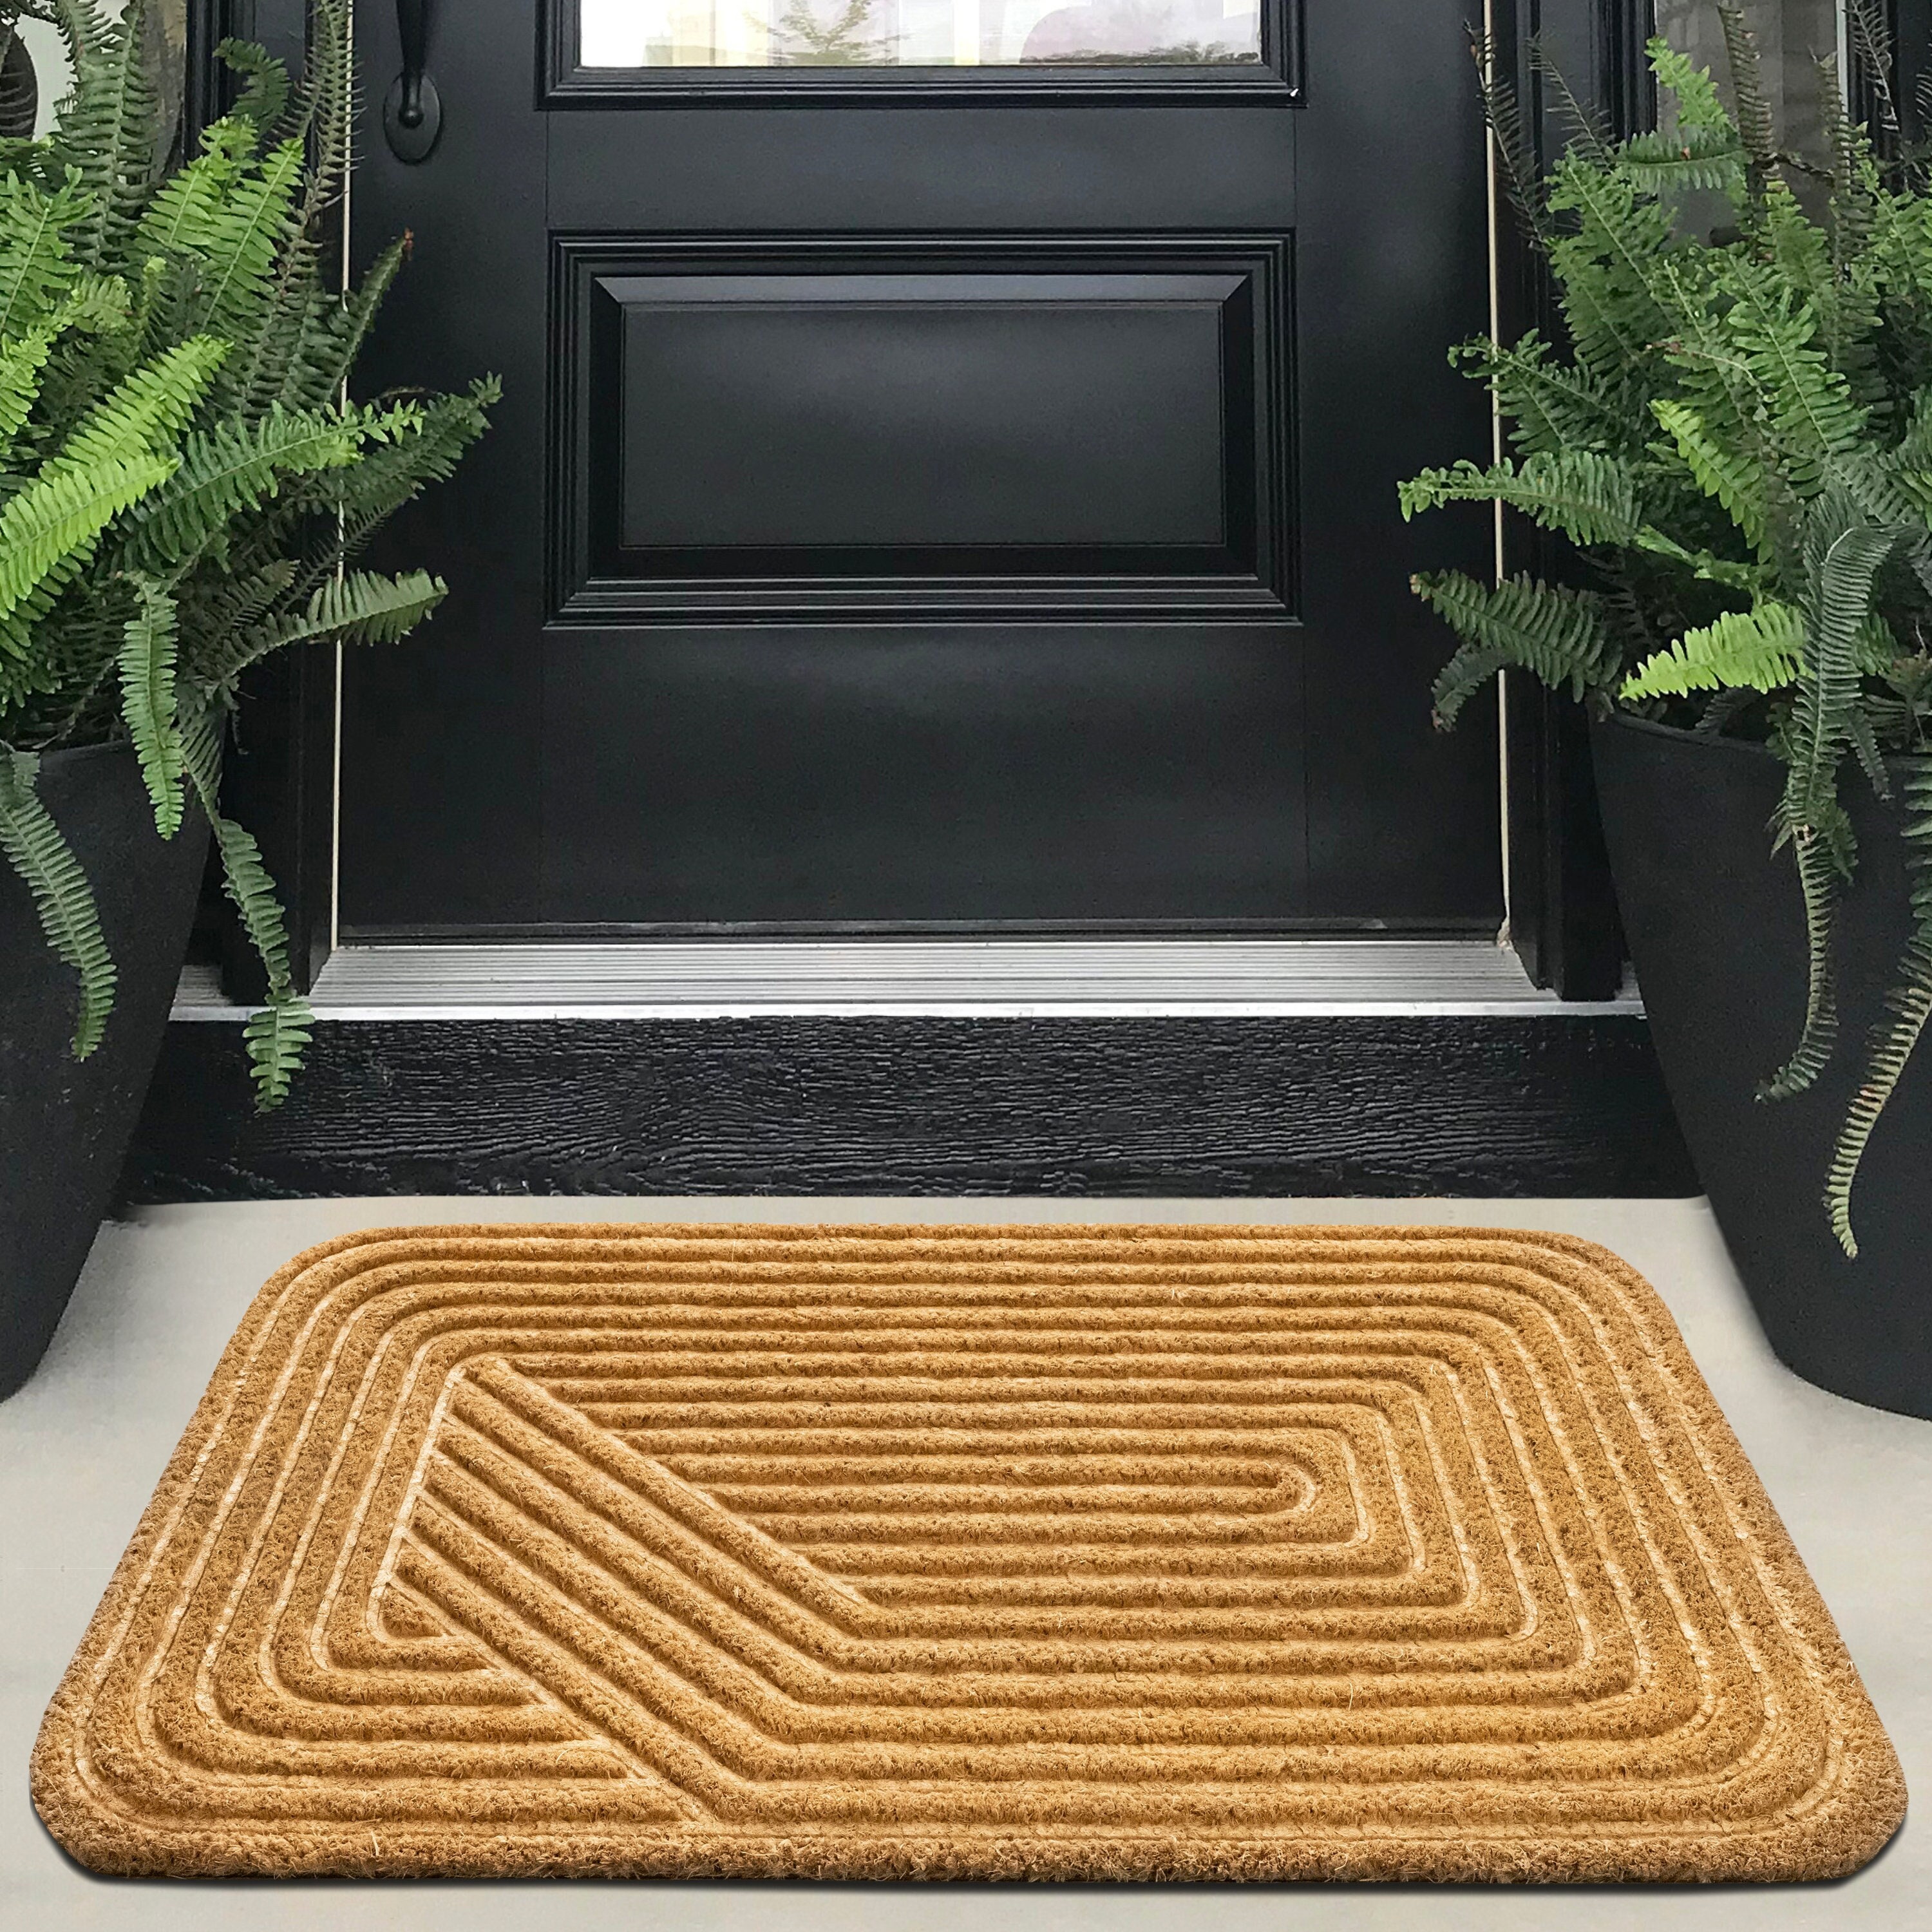 A1hc 100% Pure Rubber Monogrammed Front Door Mat 24 x39 Doormat, Indoor/ Outdoor Use - N